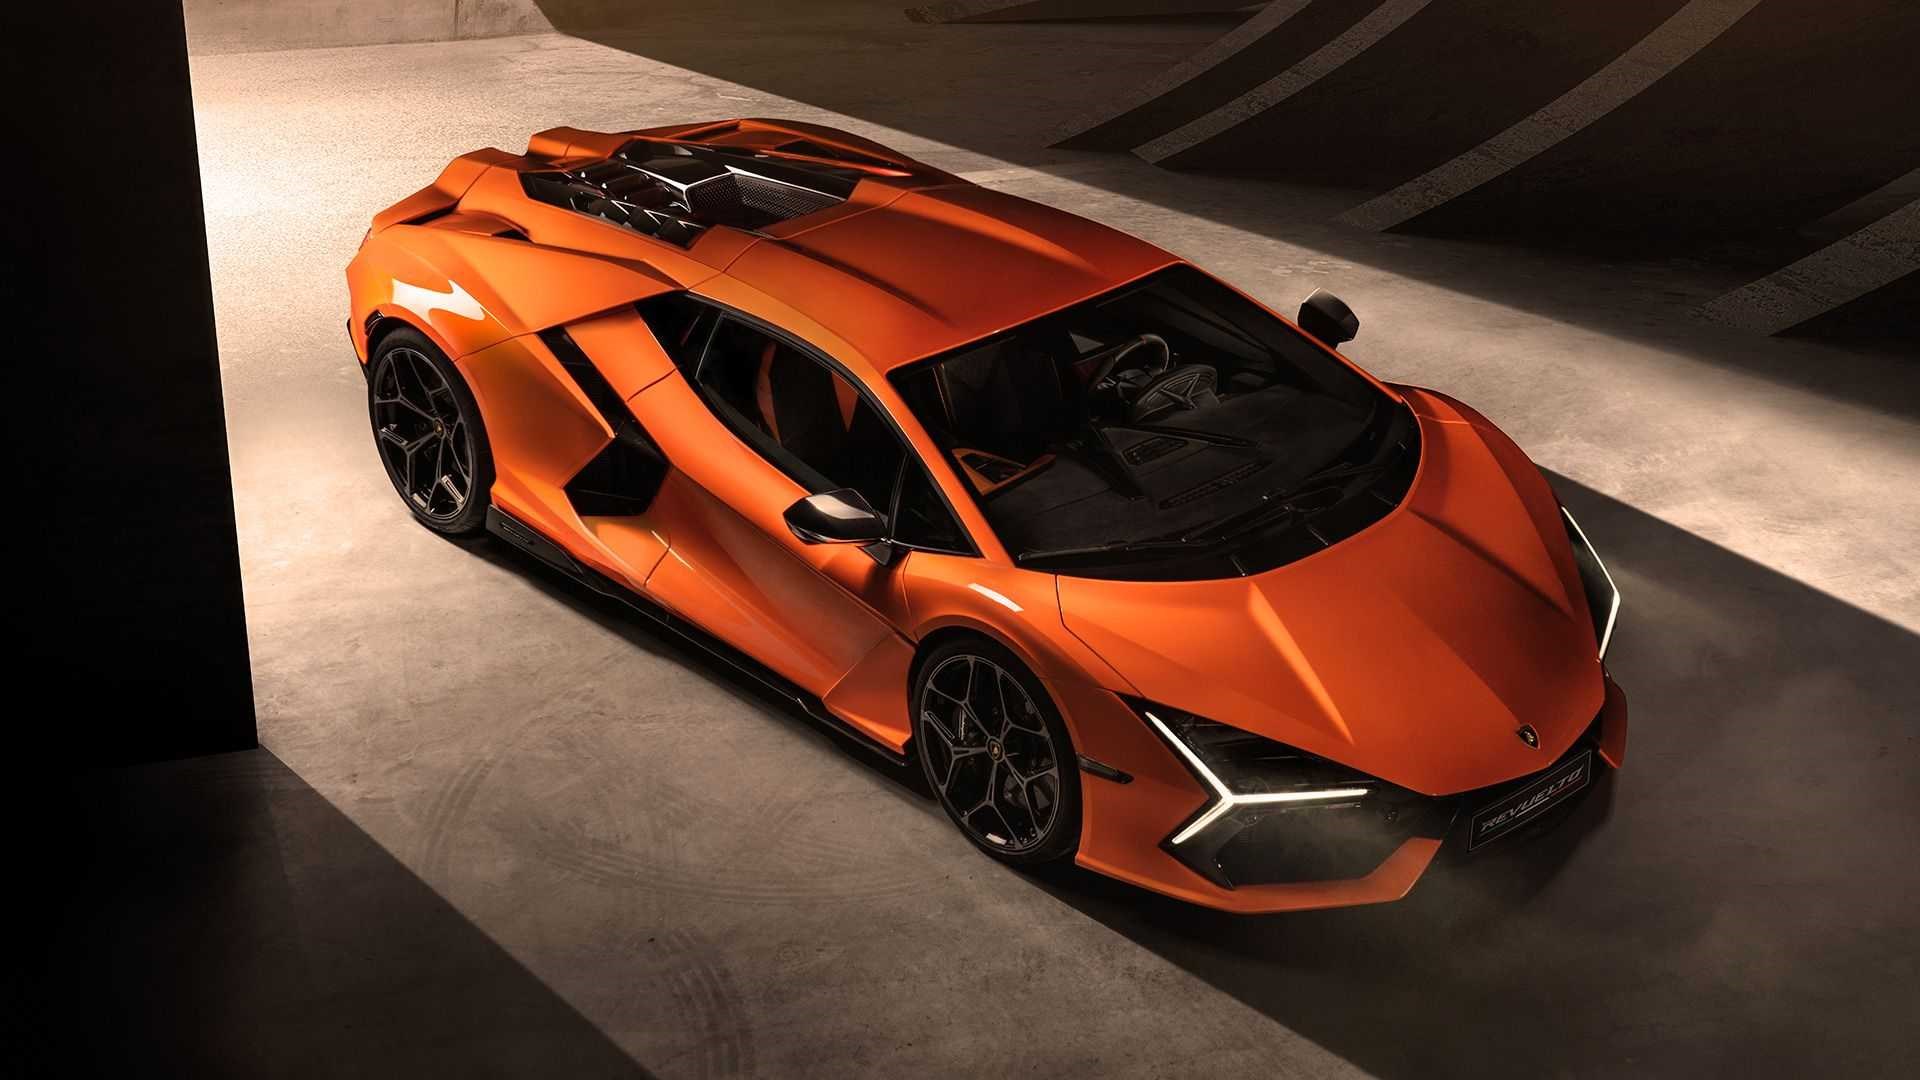 Yeni Lamborghini Revuelto tanıtıldı: İşte tasarımı ve özellikleri